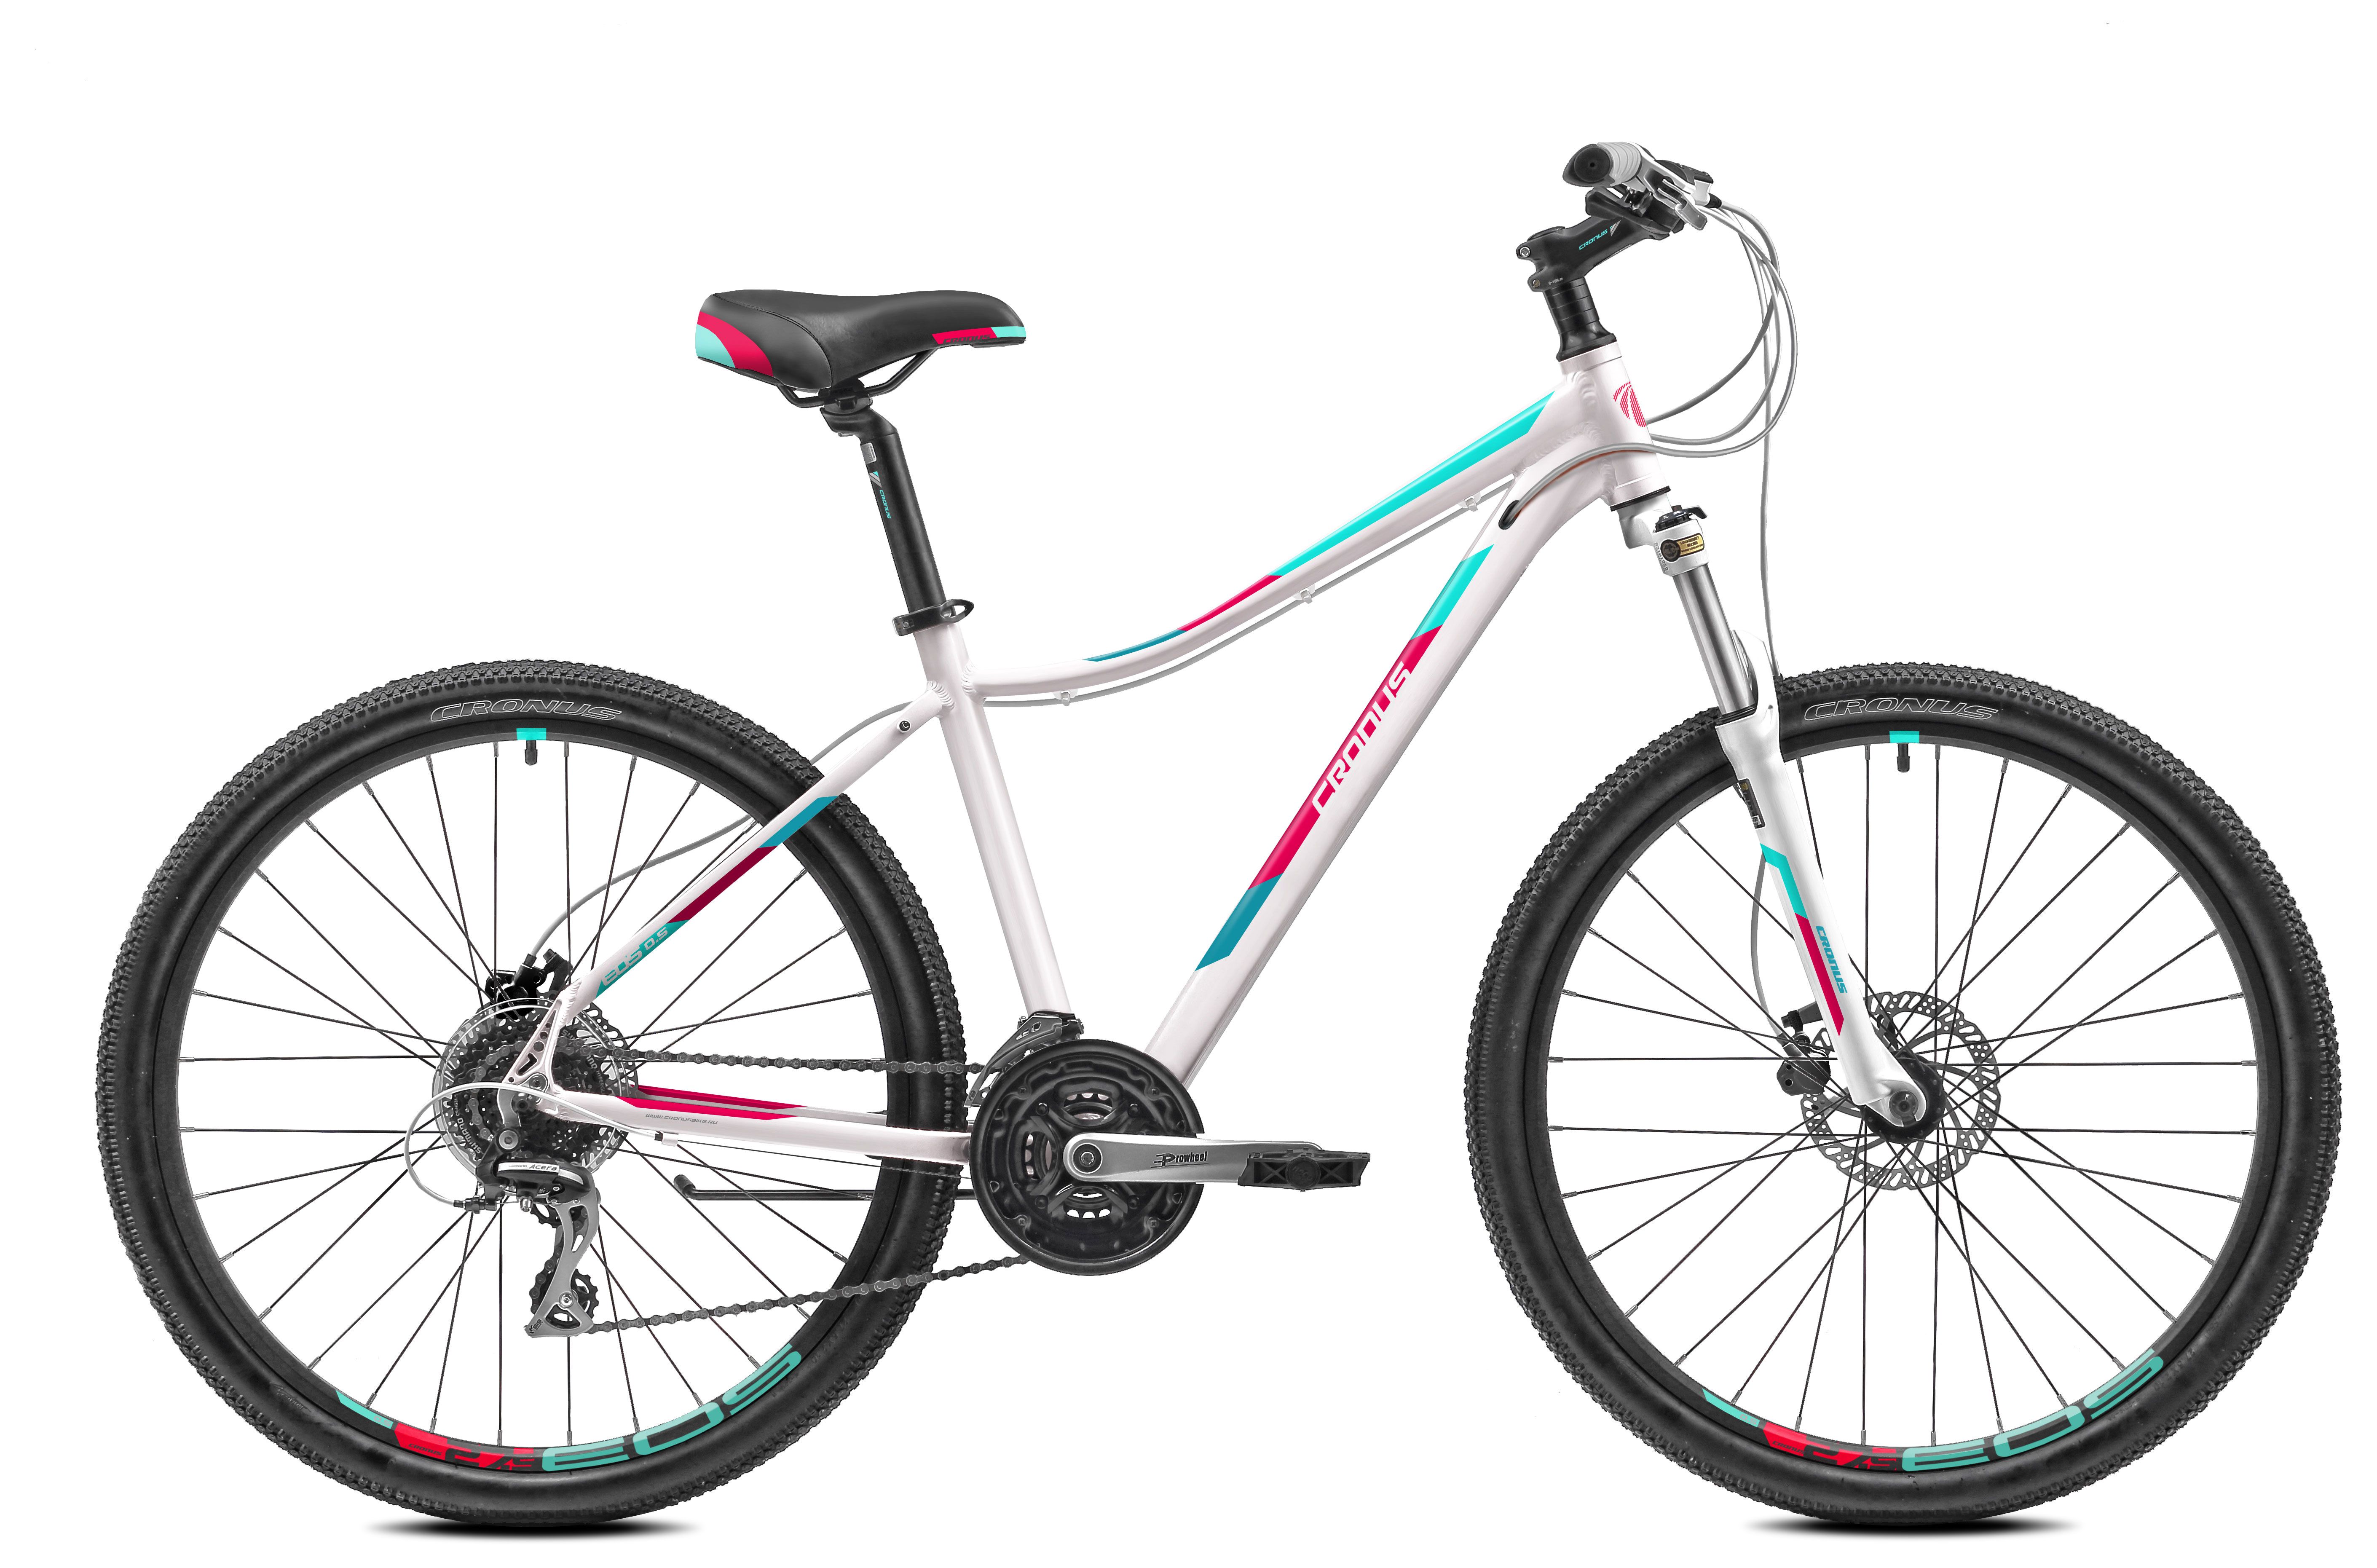  Отзывы о Женском велосипеде Cronus EOS 0.7 27,5 2018